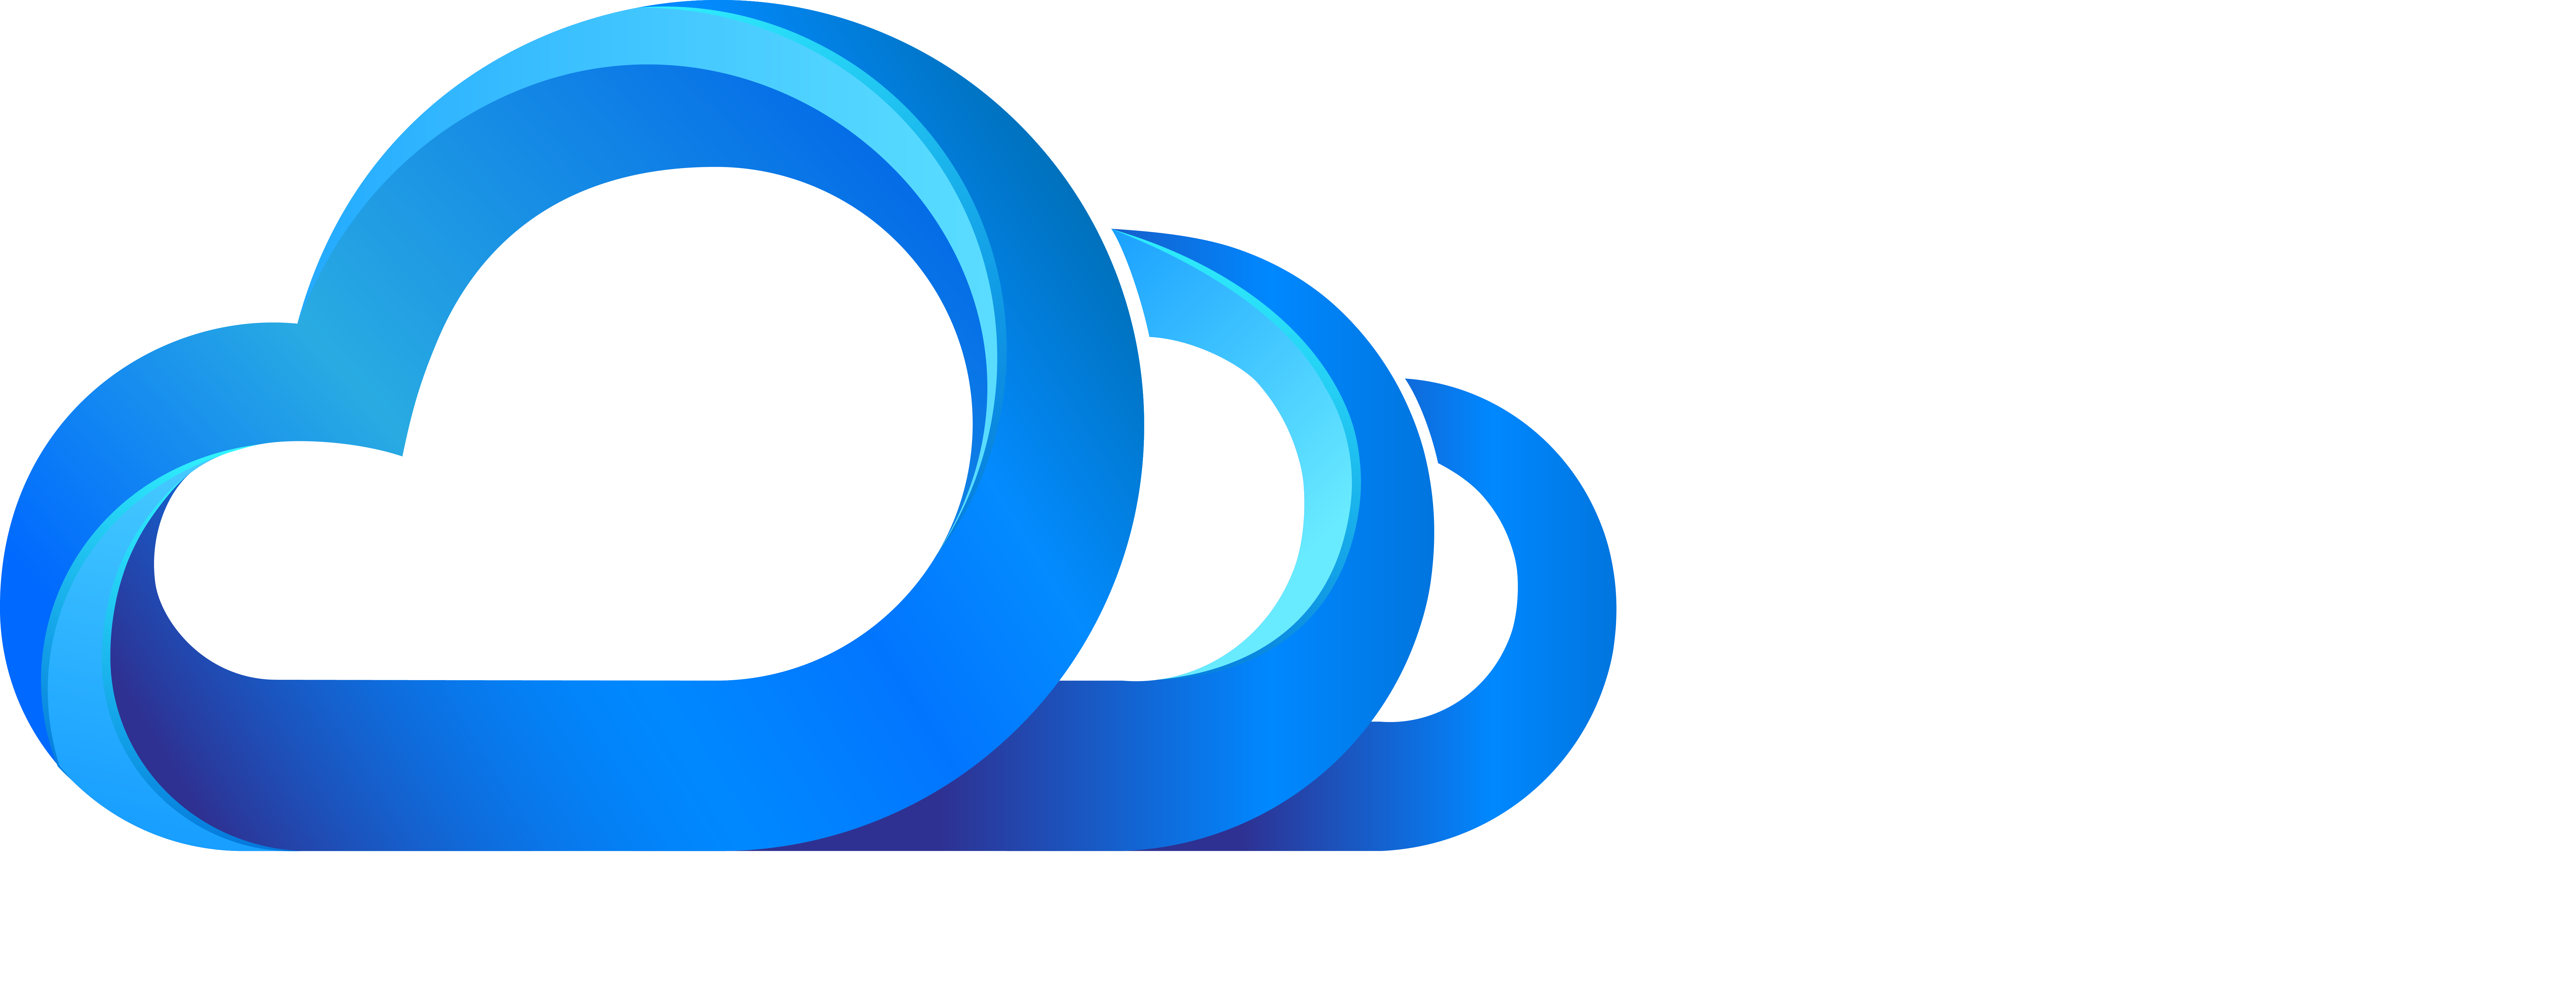 OzoneDesk